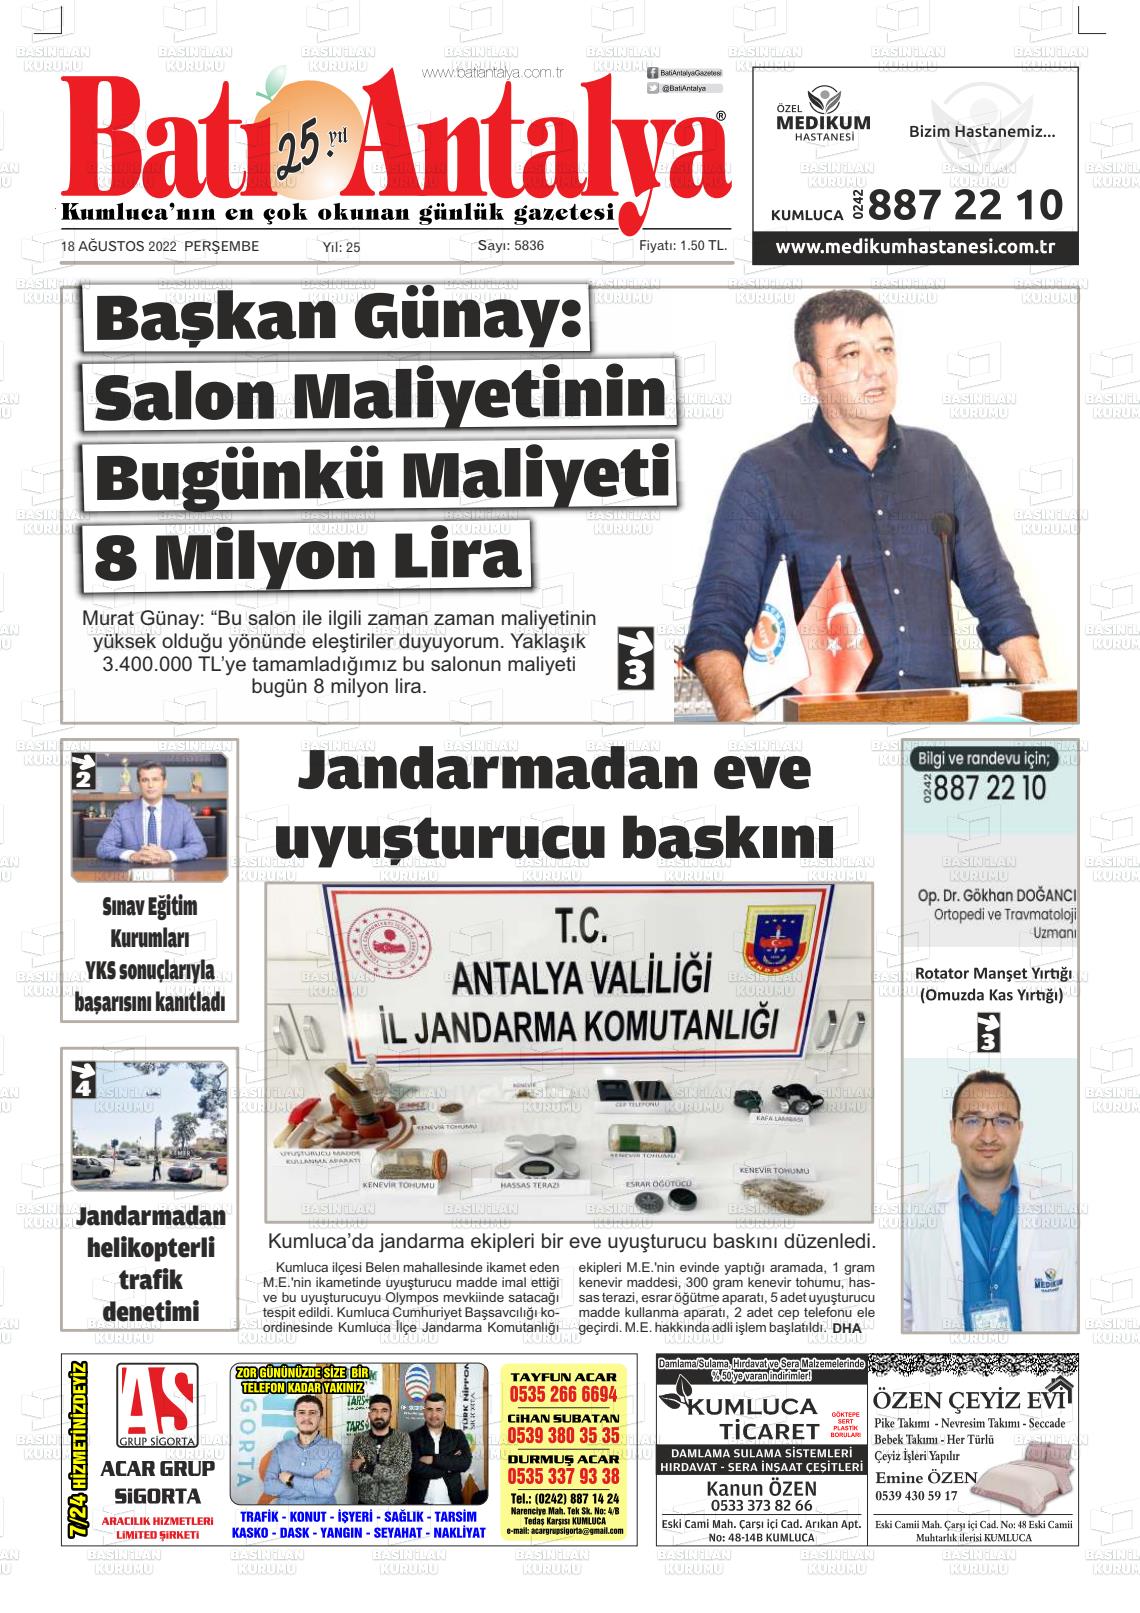 18 Ağustos 2022 Batı Antalya Gazete Manşeti